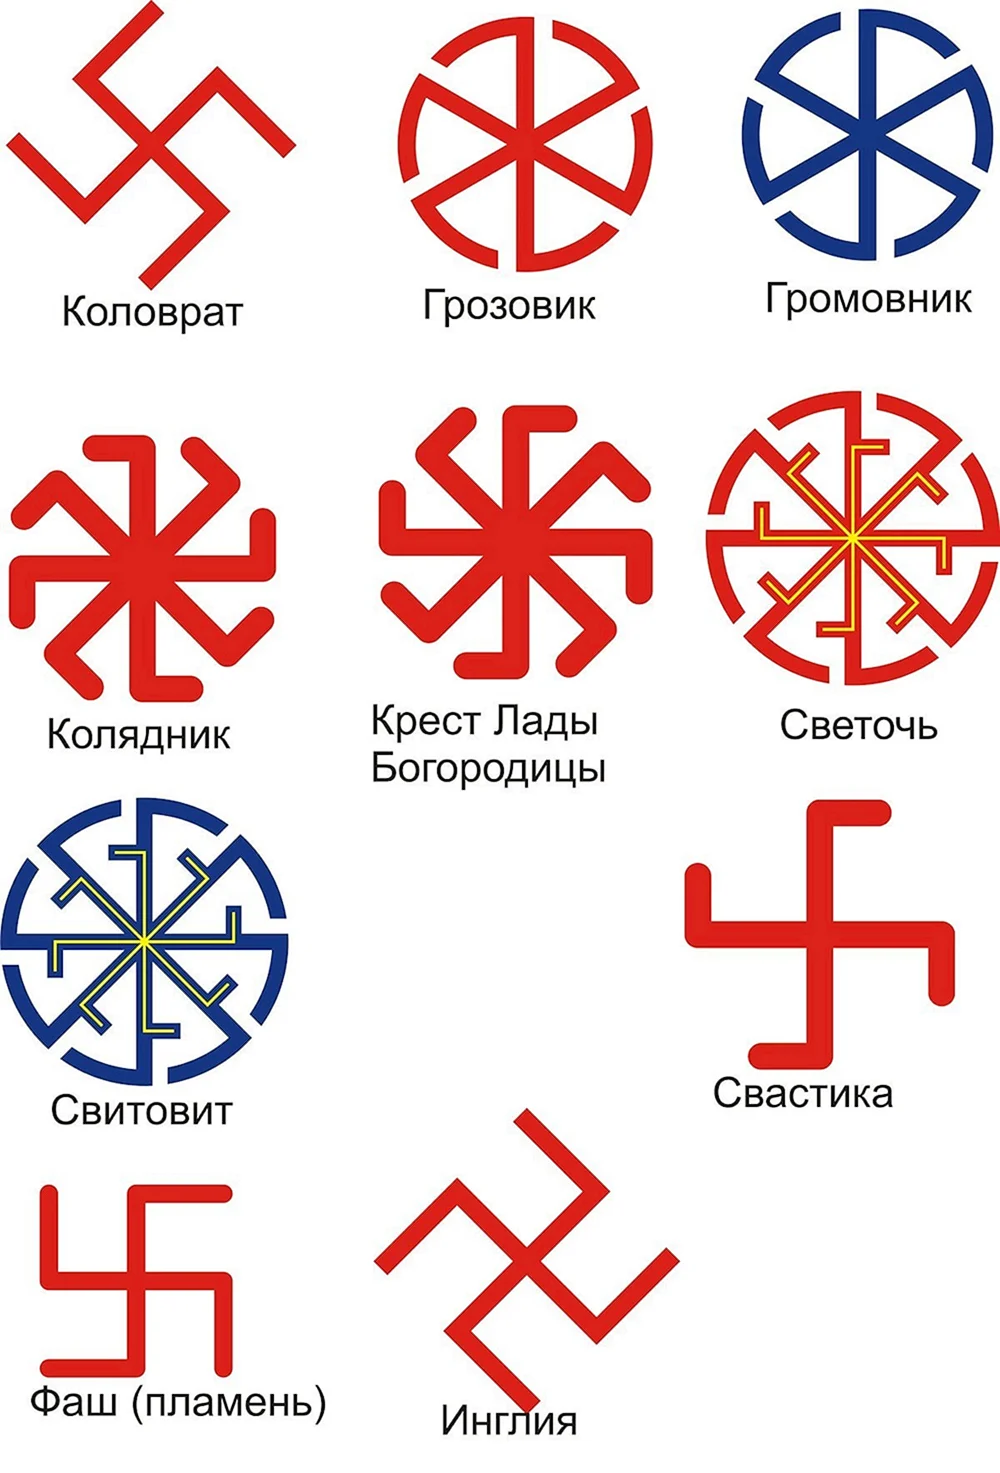 Славянский символ Коловрат четырехлучевой